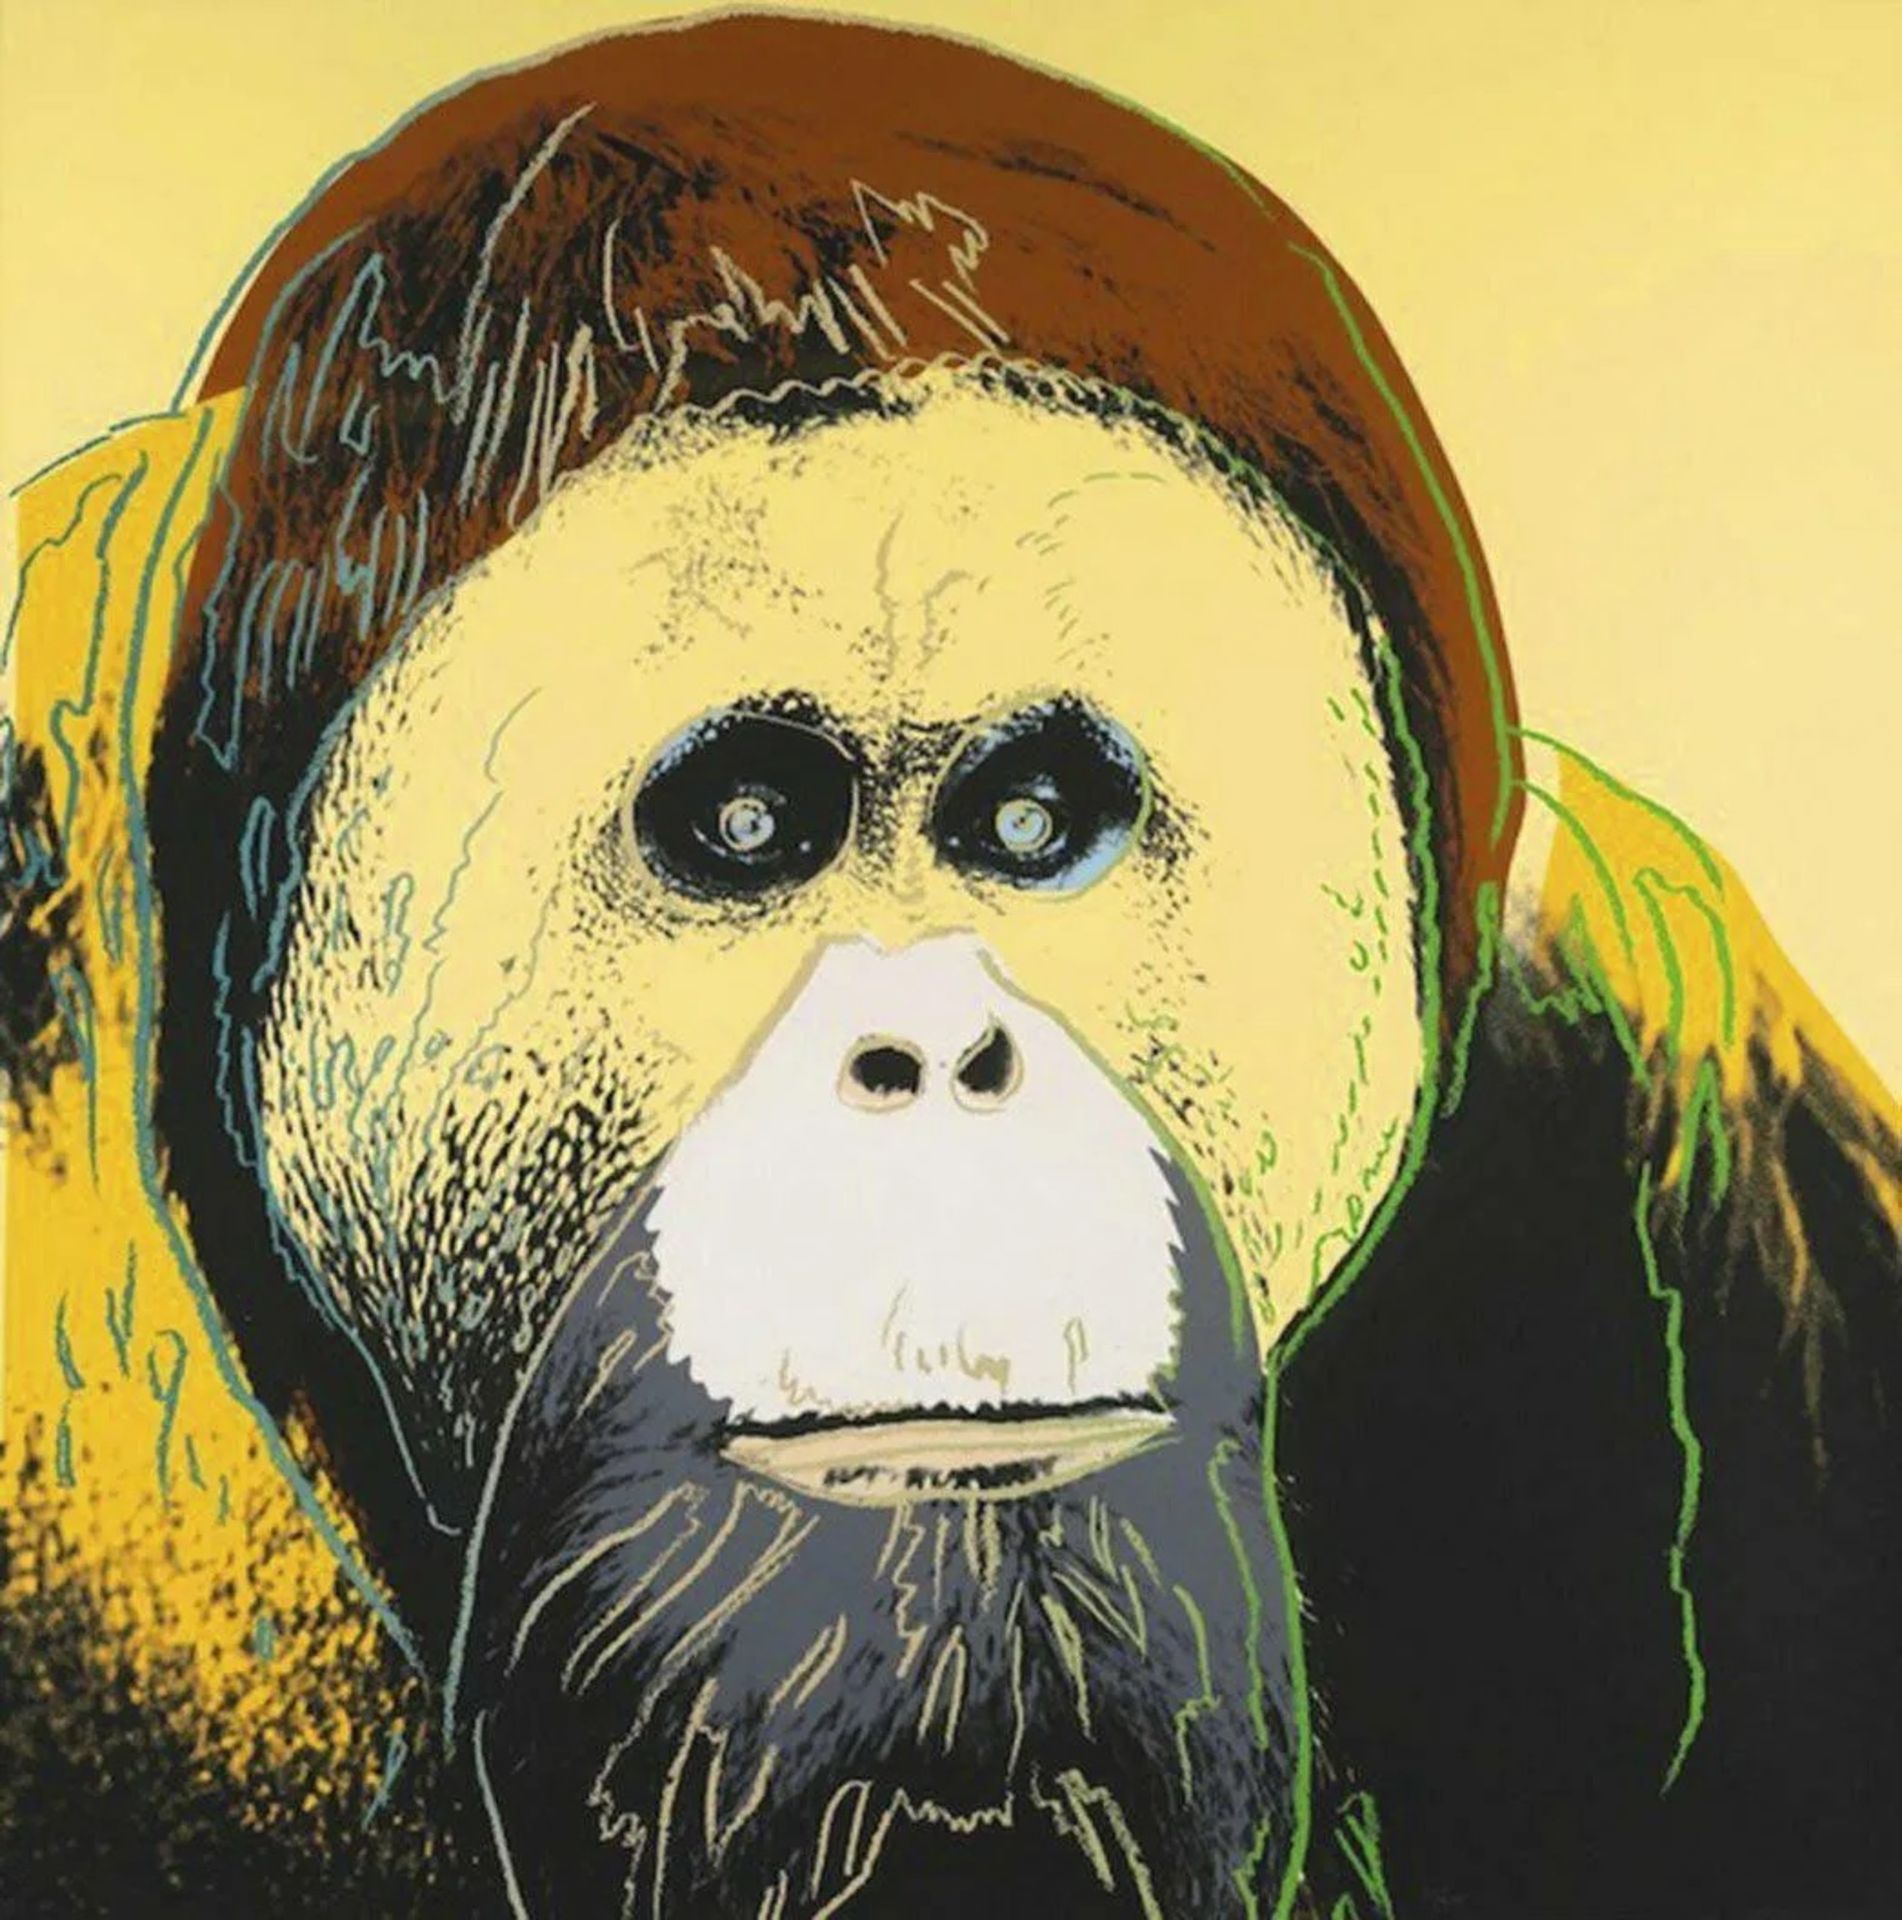 Andy Warhol, "Orangutan" from 'Endangered Species' 1983 Silkscreen
